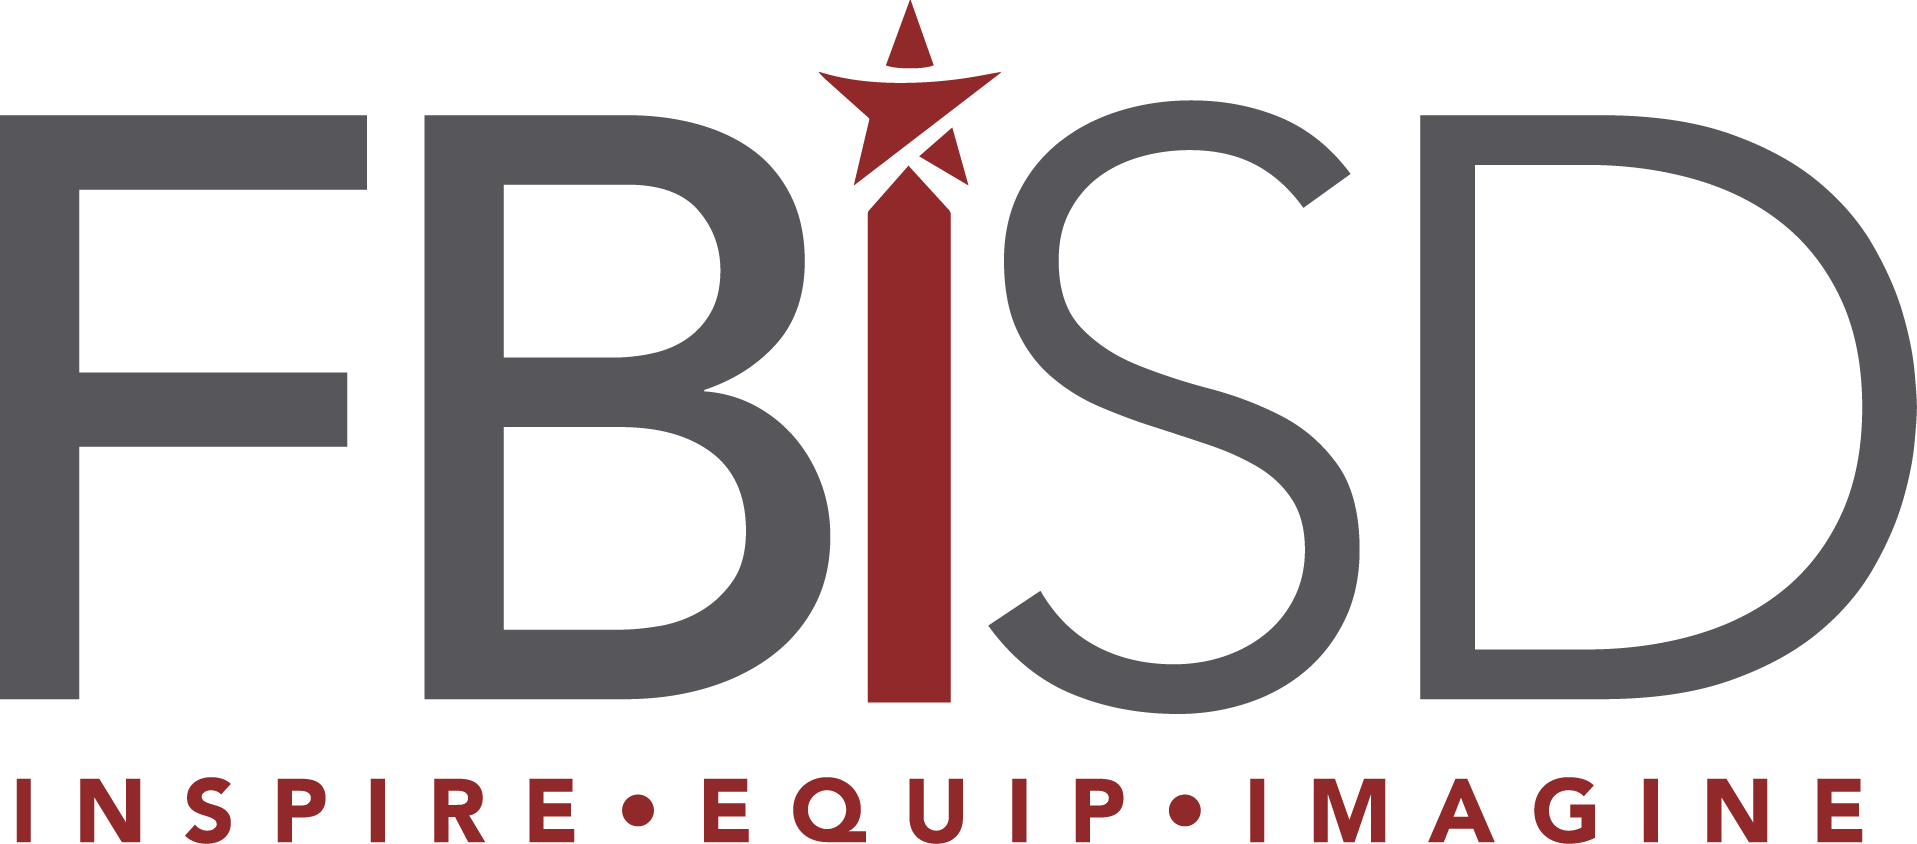 September 2021 - Fort Bend ISD's Focus Group logo